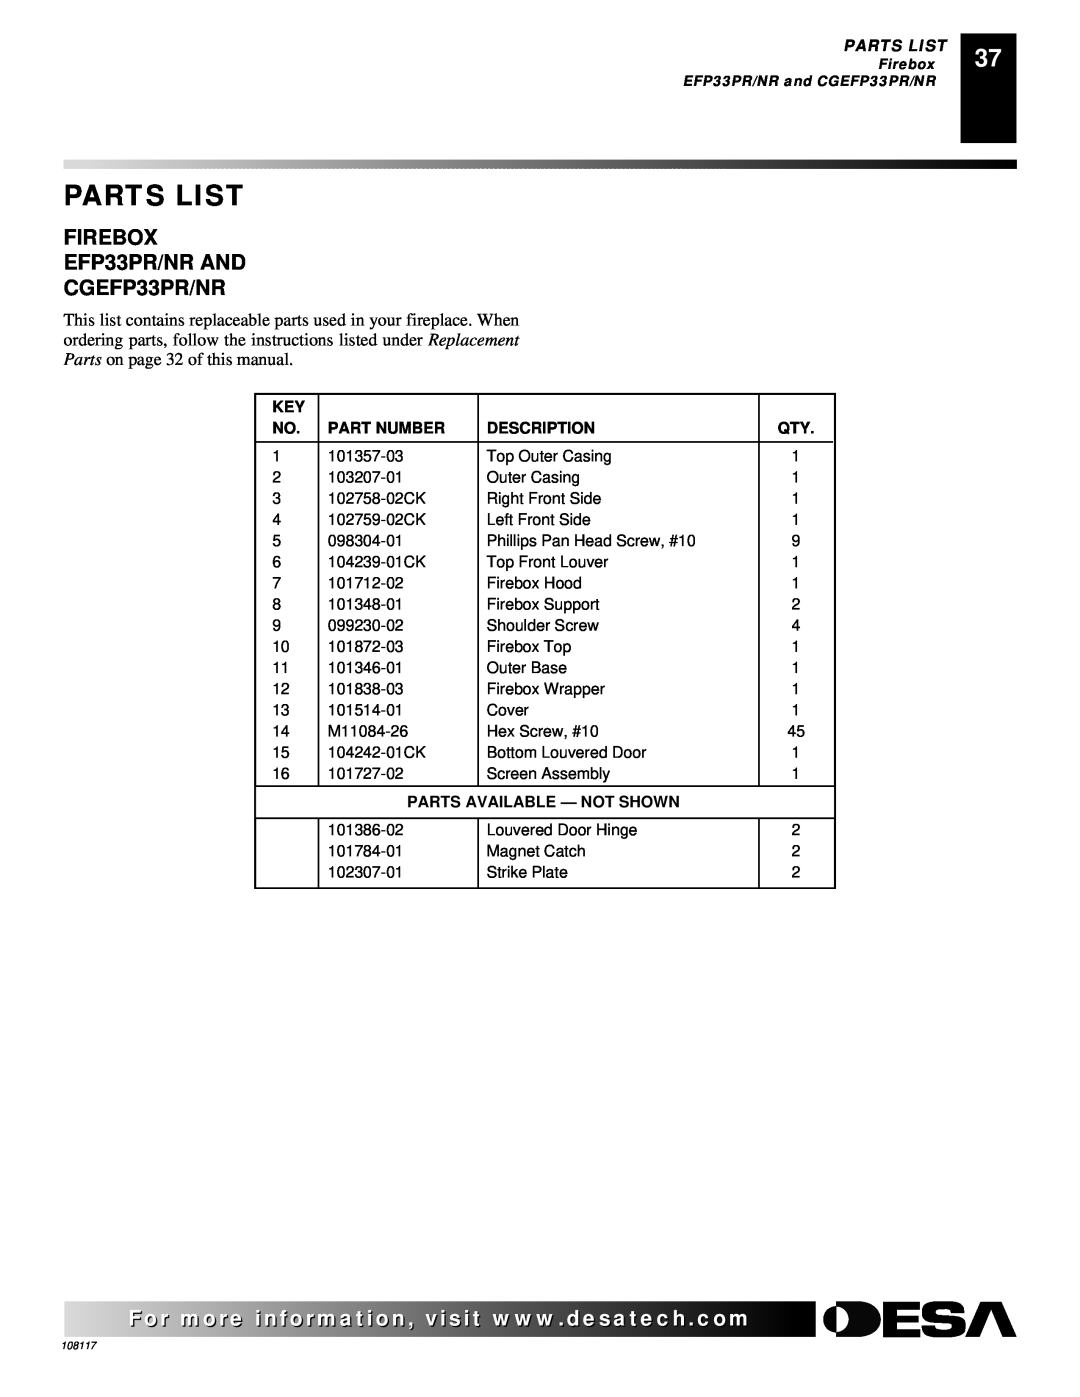 Desa VTGF33PR FIREBOX EFP33PR/NR AND CGEFP33PR/NR, Parts List, Part Number, Description, Parts Available - Not Shown 